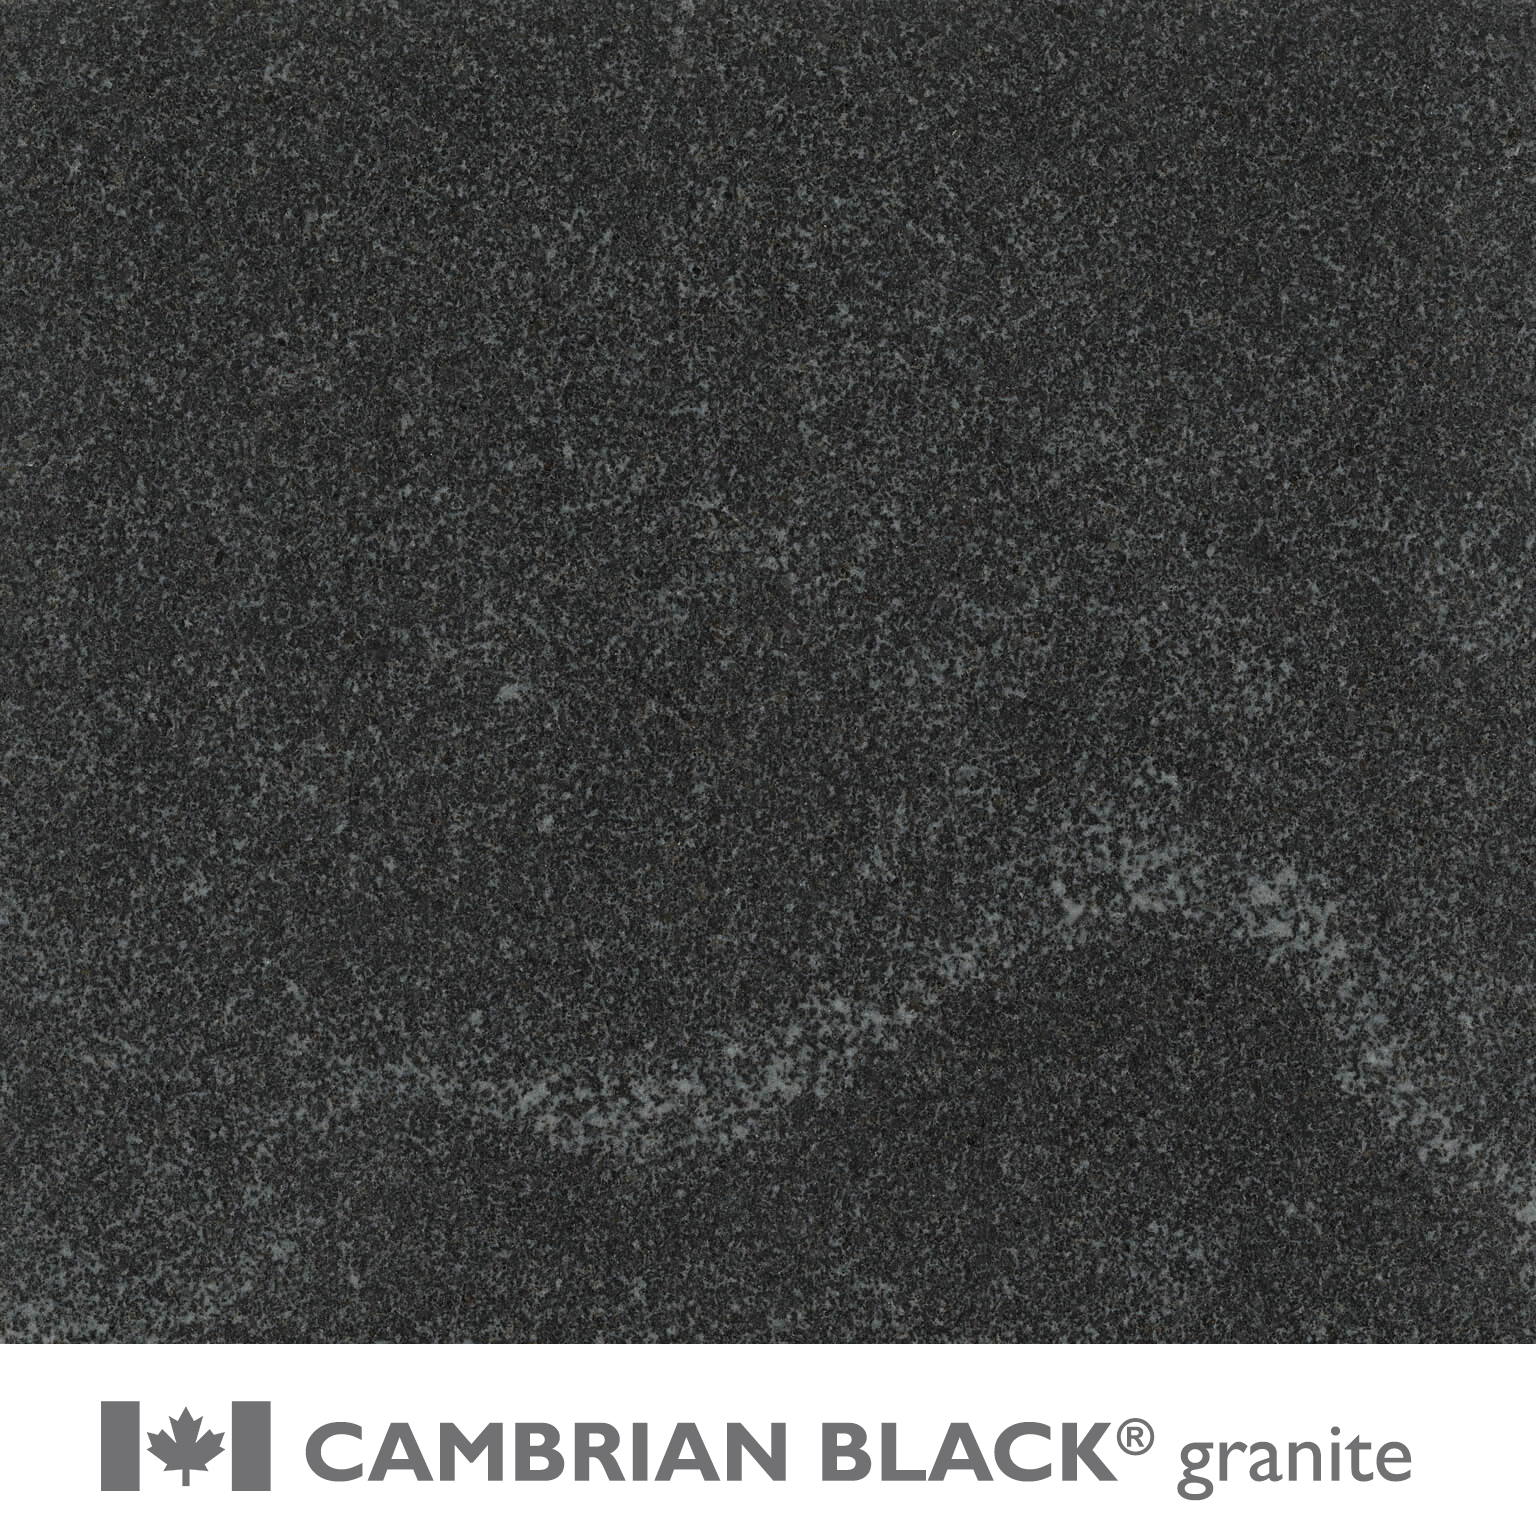 CAMBRIAN BLACK